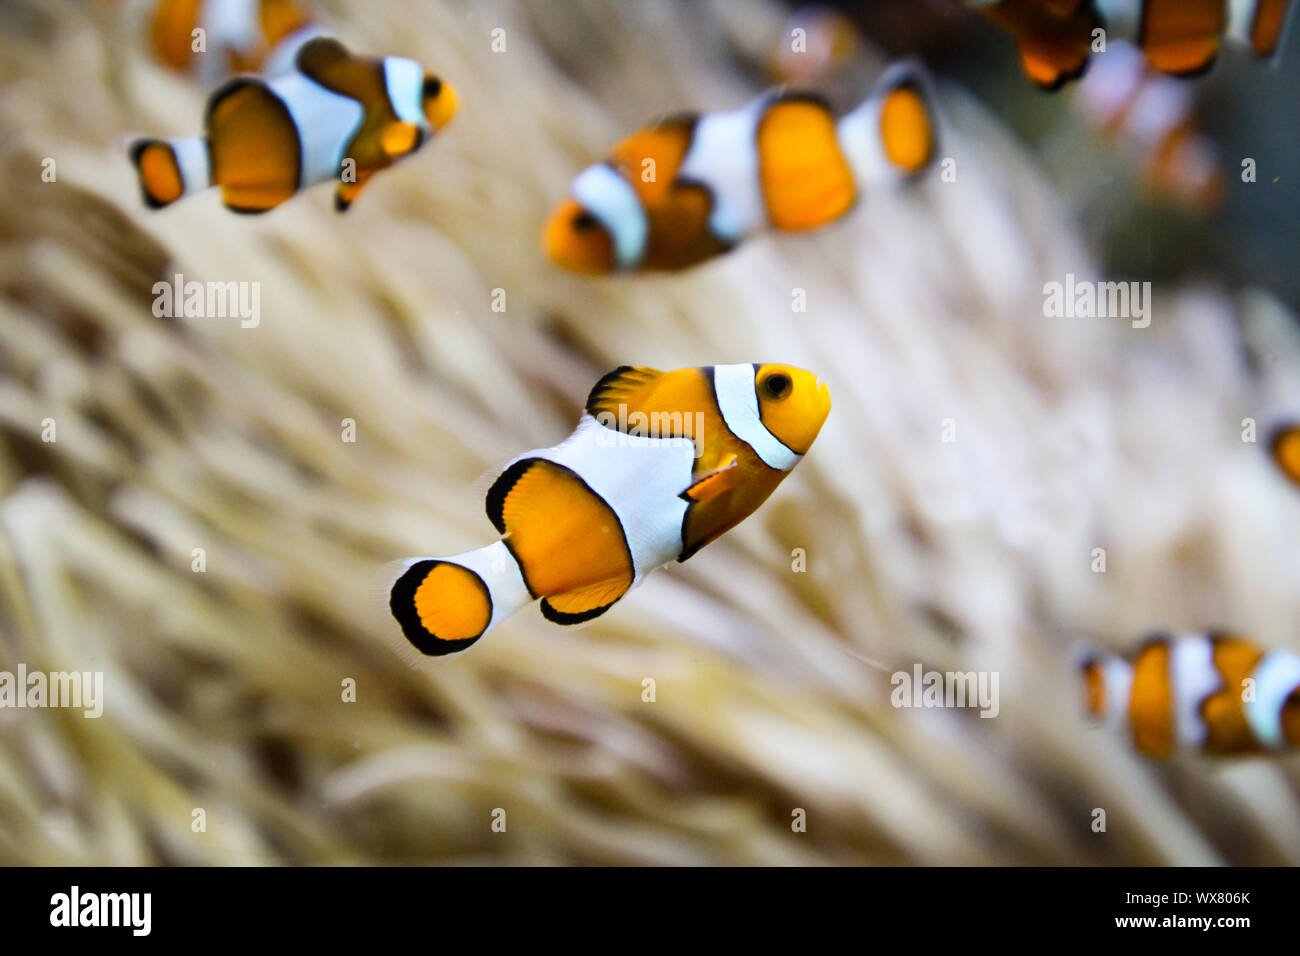 Anemonenfisch in einer Anemone Stockfoto